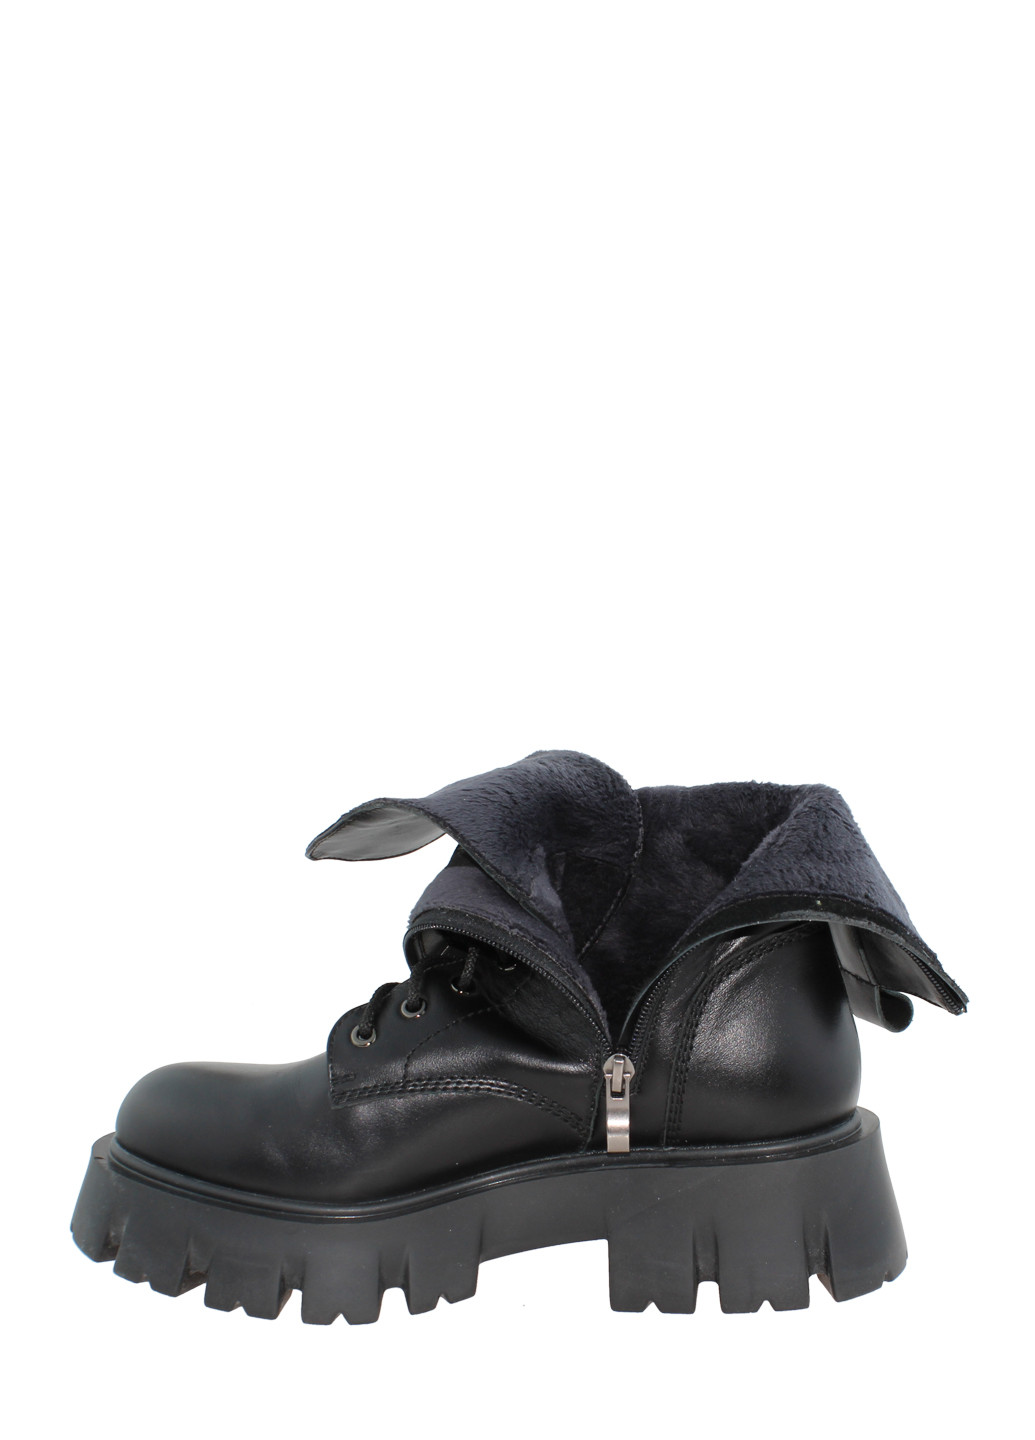 Осенние ботинки rsm-1755 черный Sothby's